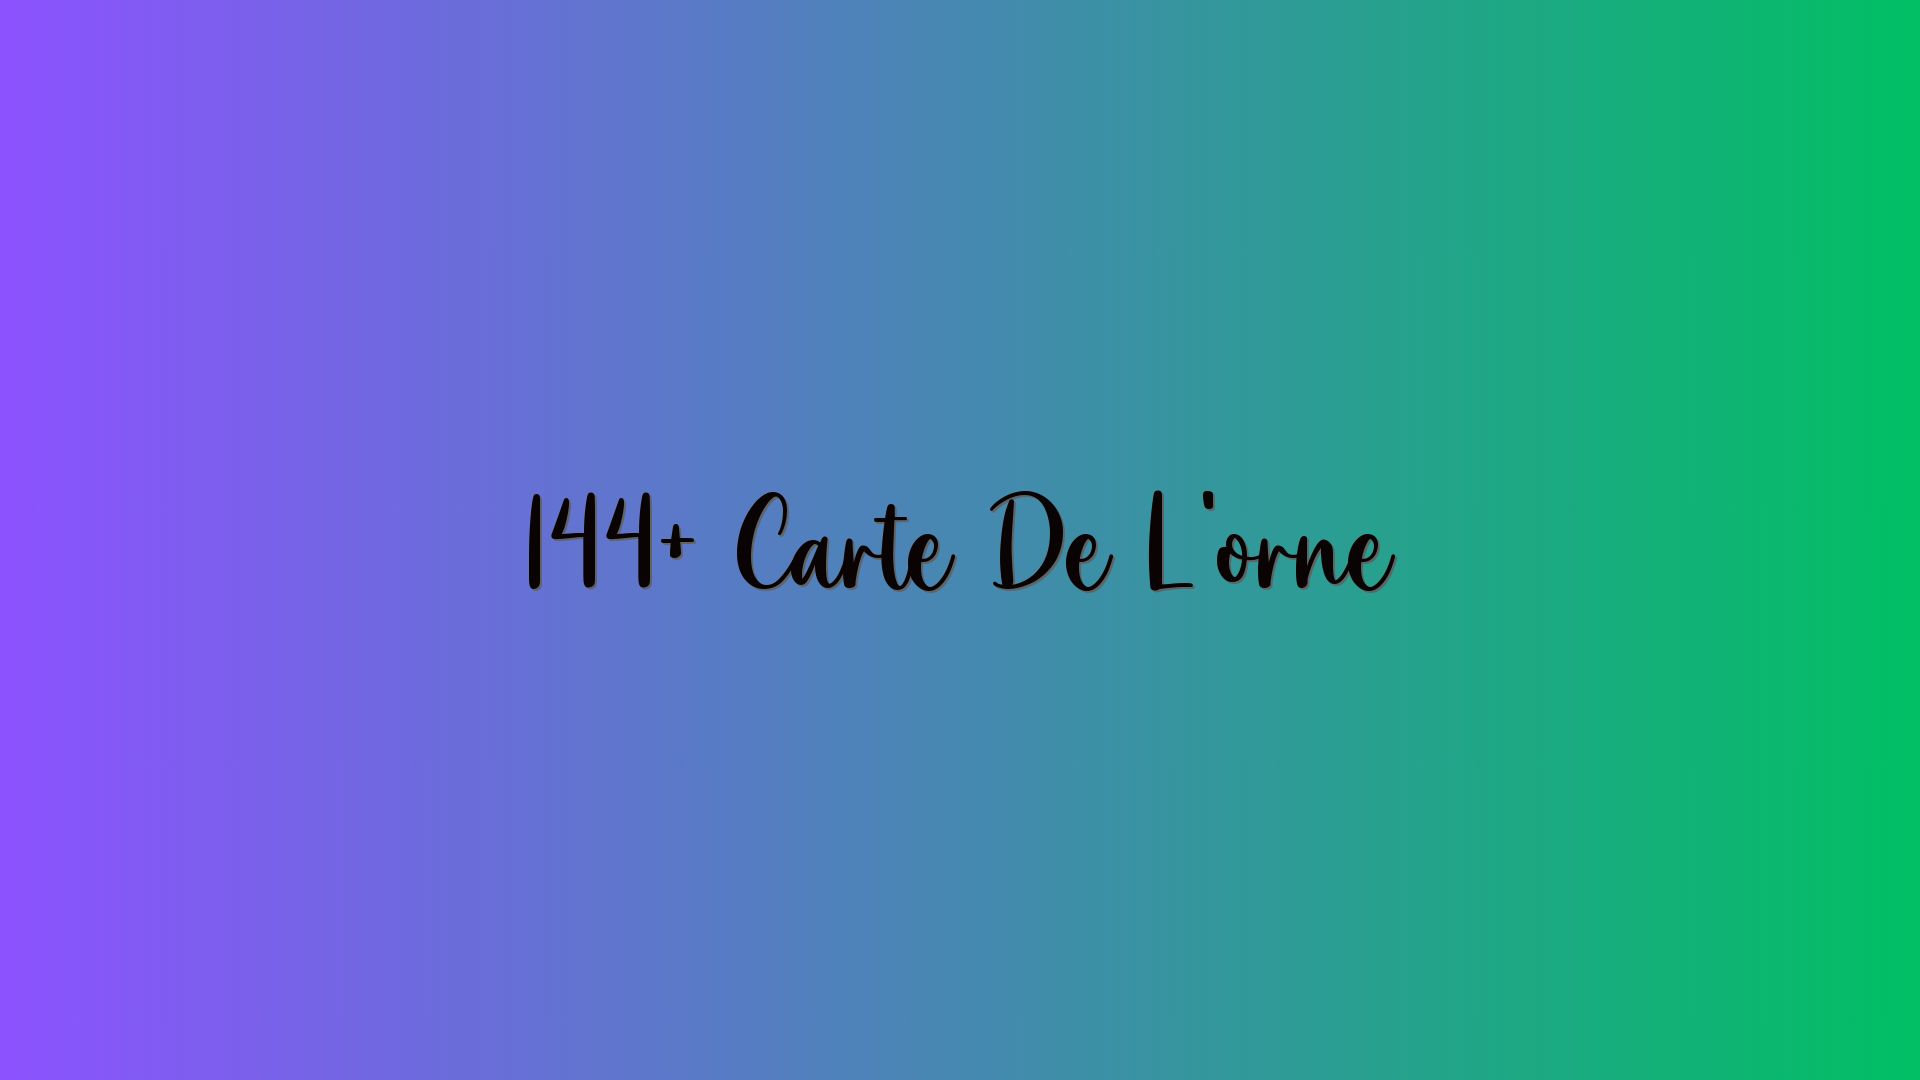 144+ Carte De L’orne